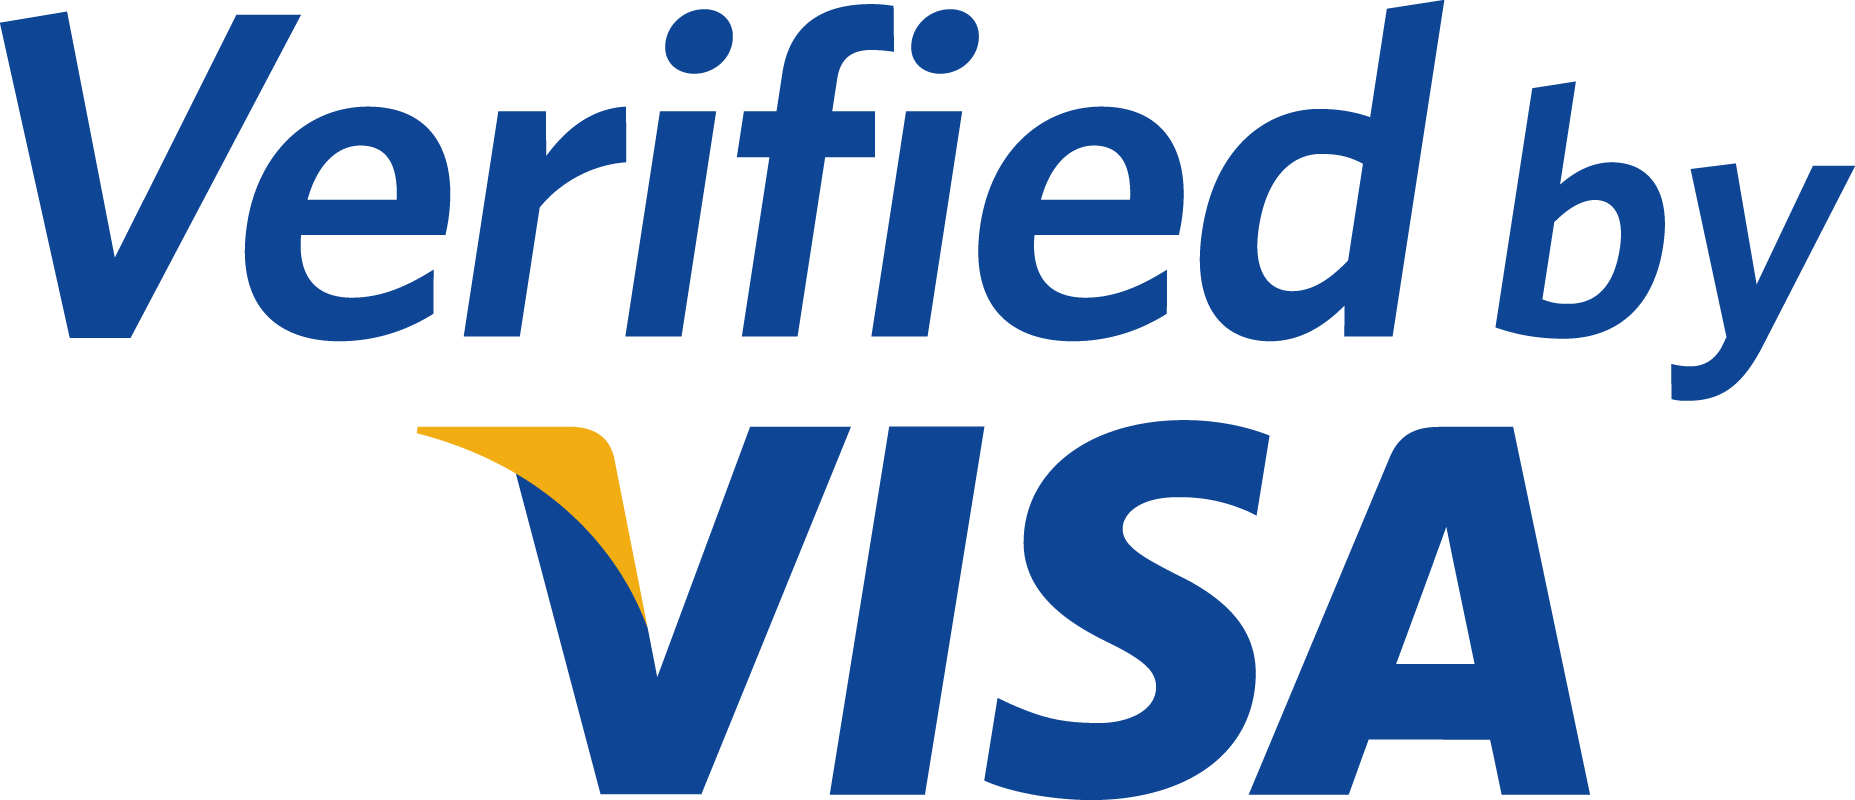 Credit Card Logos - Visa / Mastercard Decal / Sticker - Size - Large (6.5